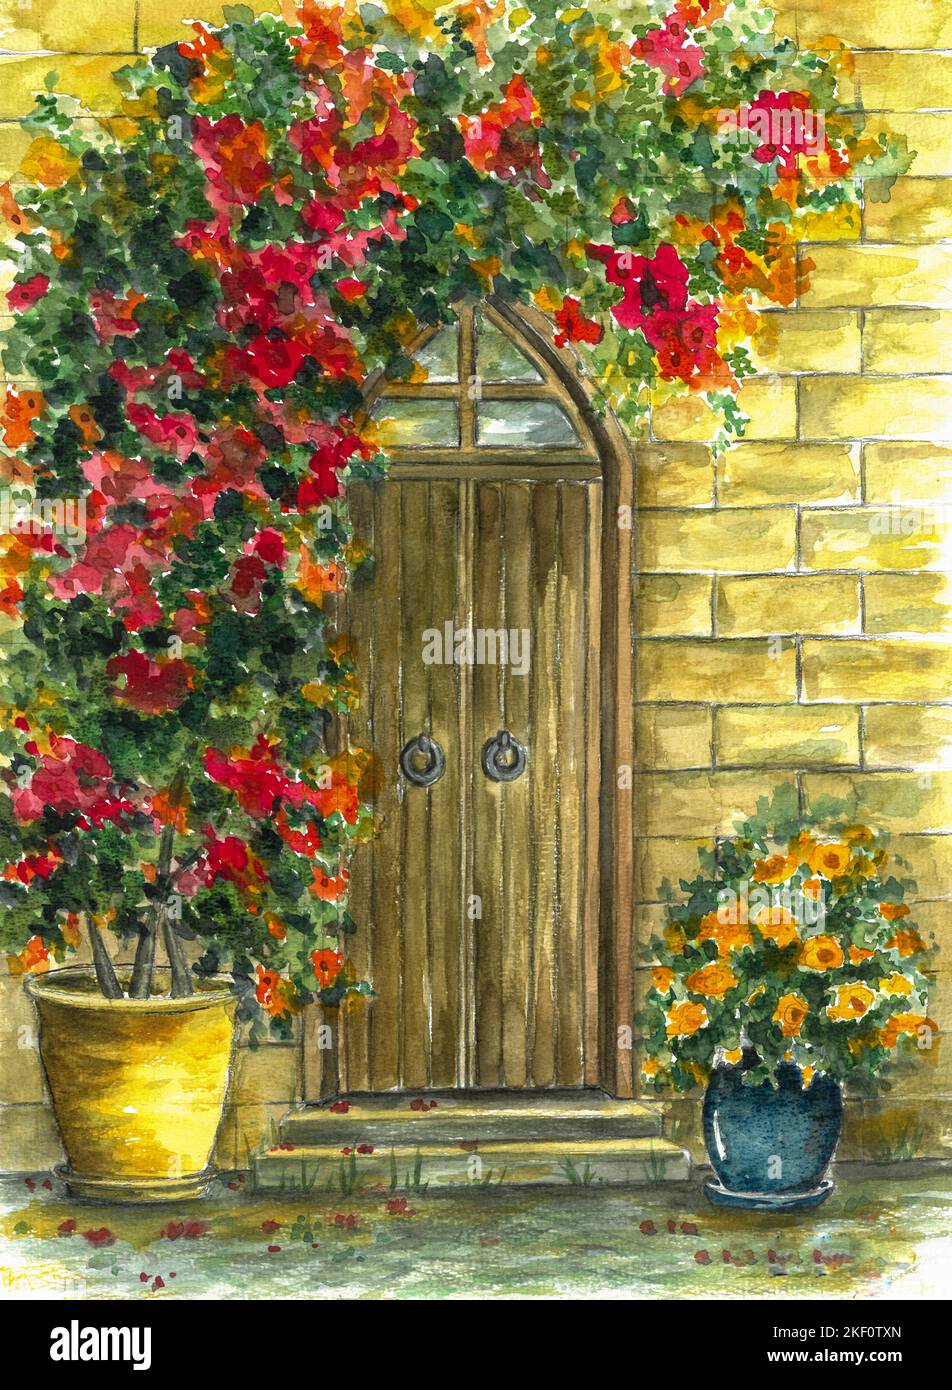 Peinture aquarelle de la porte de jardin en bois avec des roses et des fleurs de lierre. Peint par le photographe. Banque D'Images